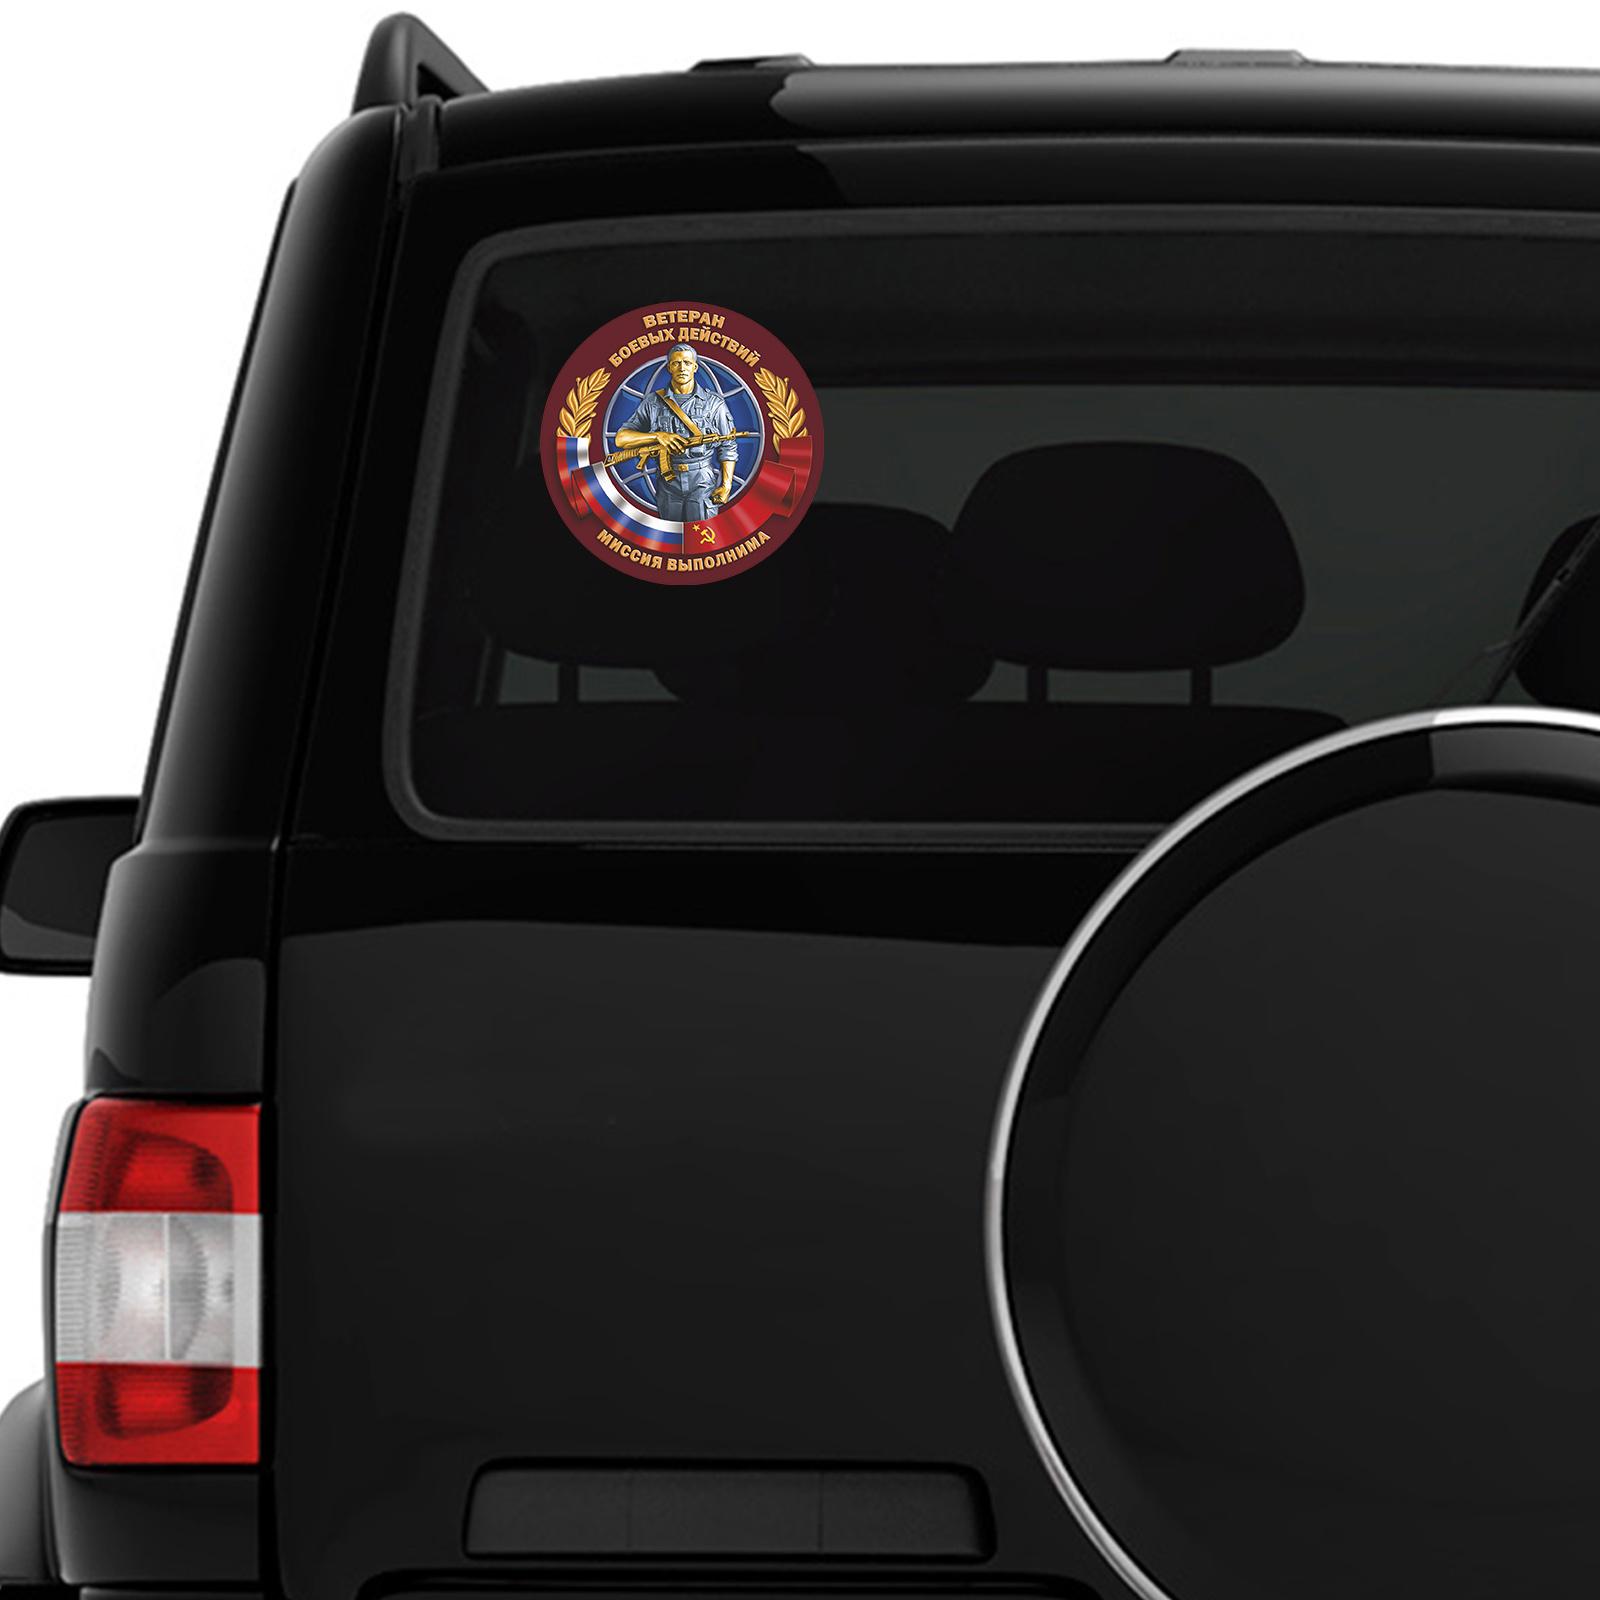 Сувенирная наклейка Ветерану боевых действий на стекло авто